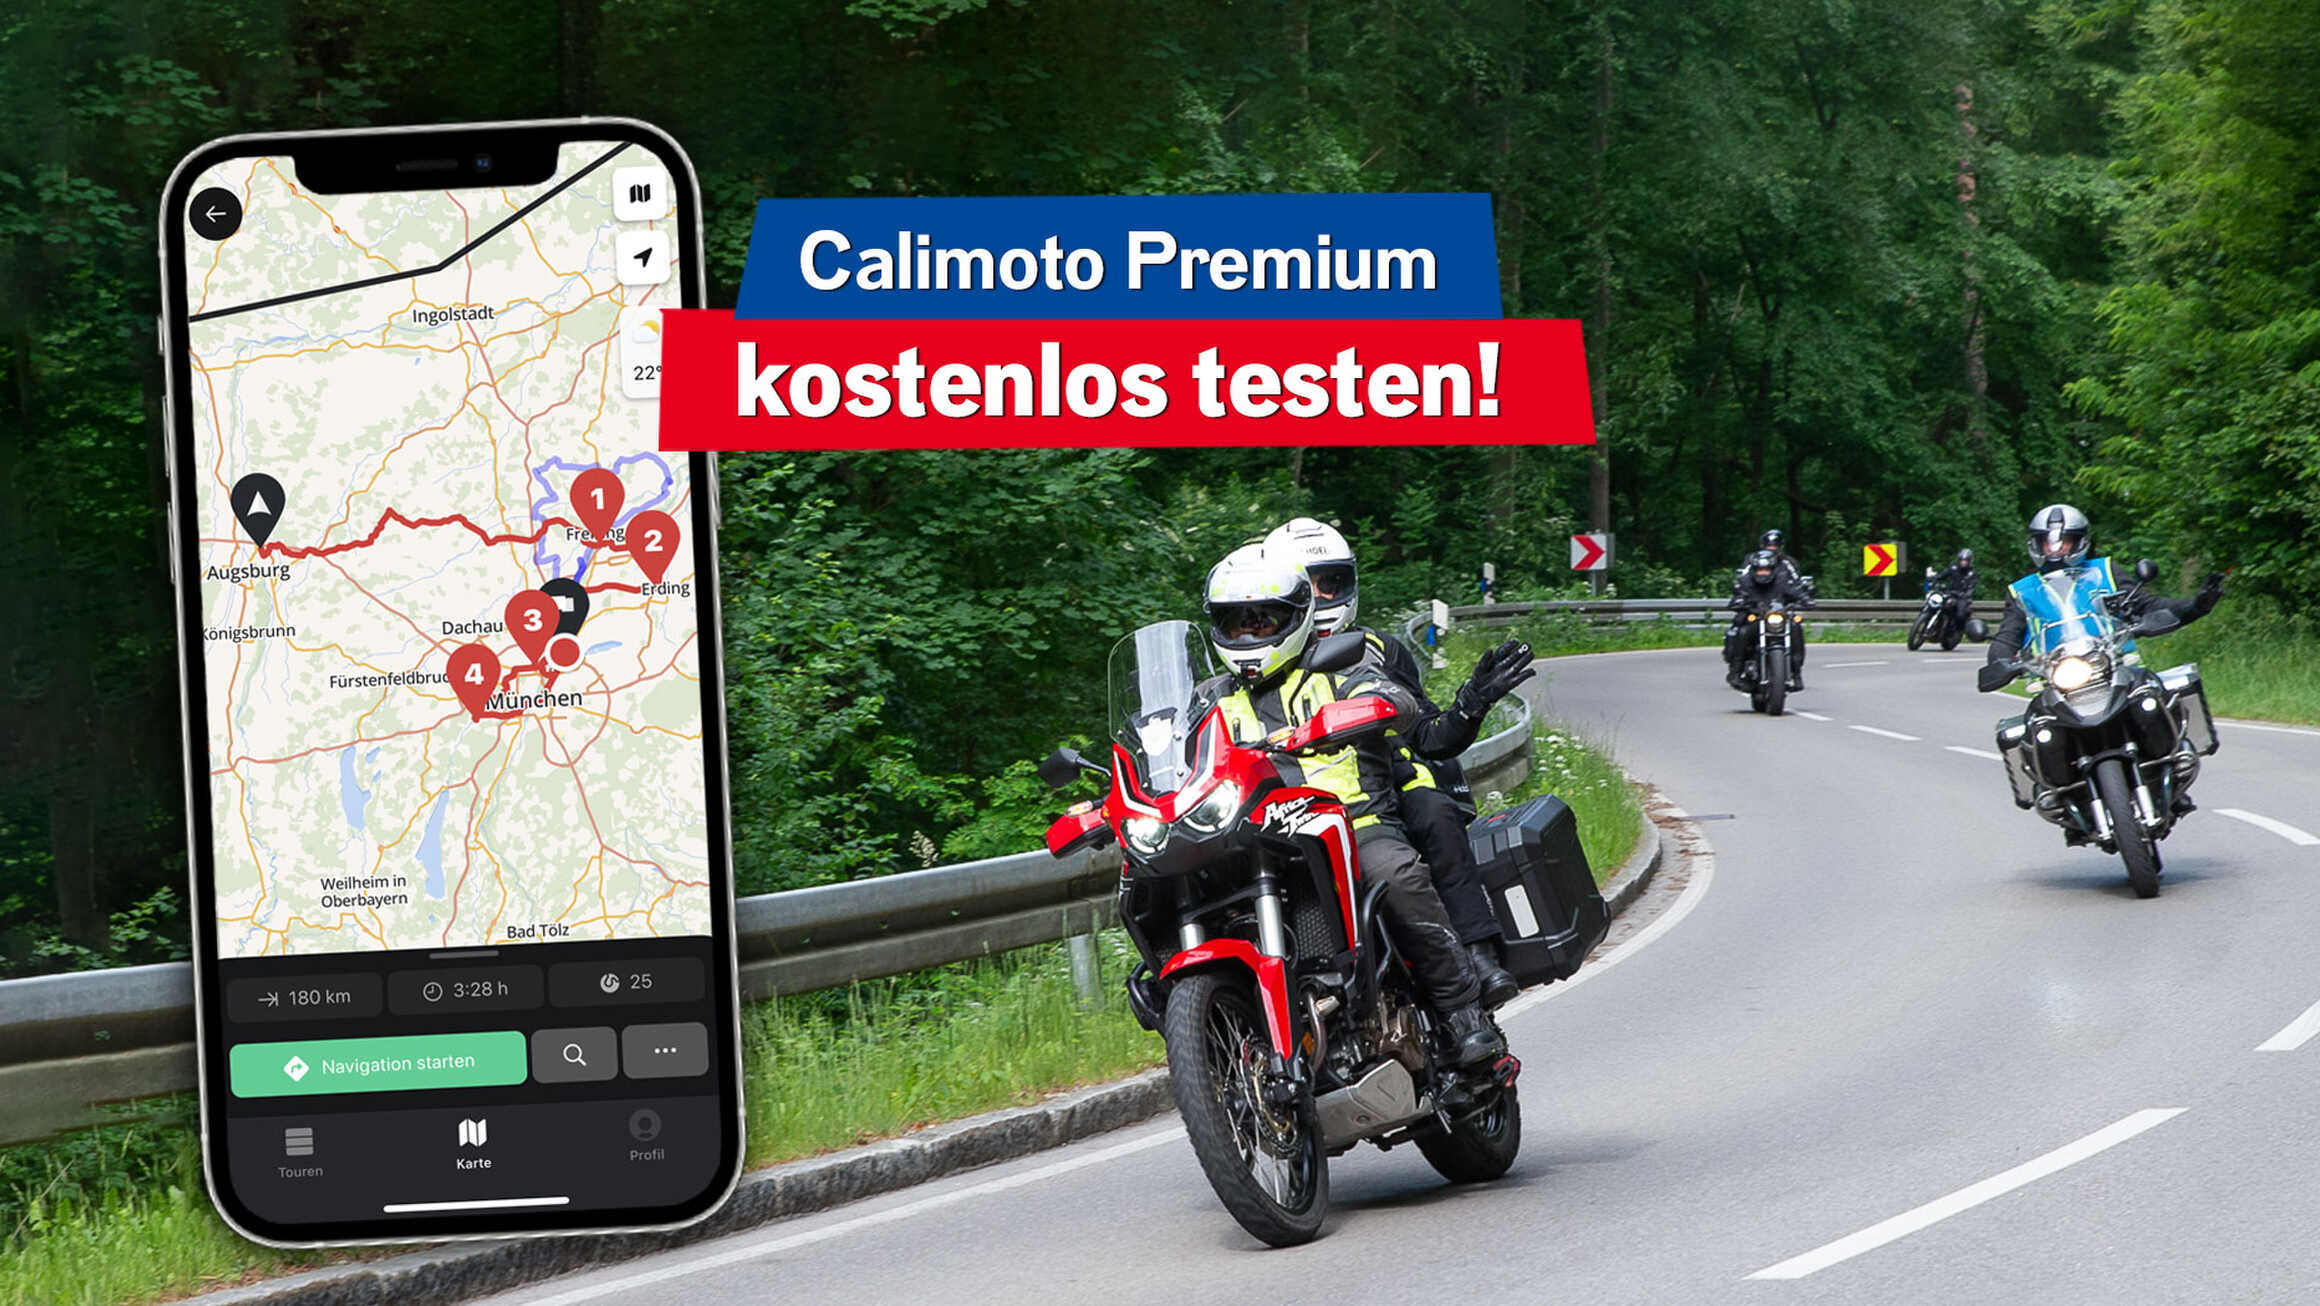 Calimoto: Streckenvorschlag & Premium gratis testen mit der ROCK ANTENNE Motorradtour